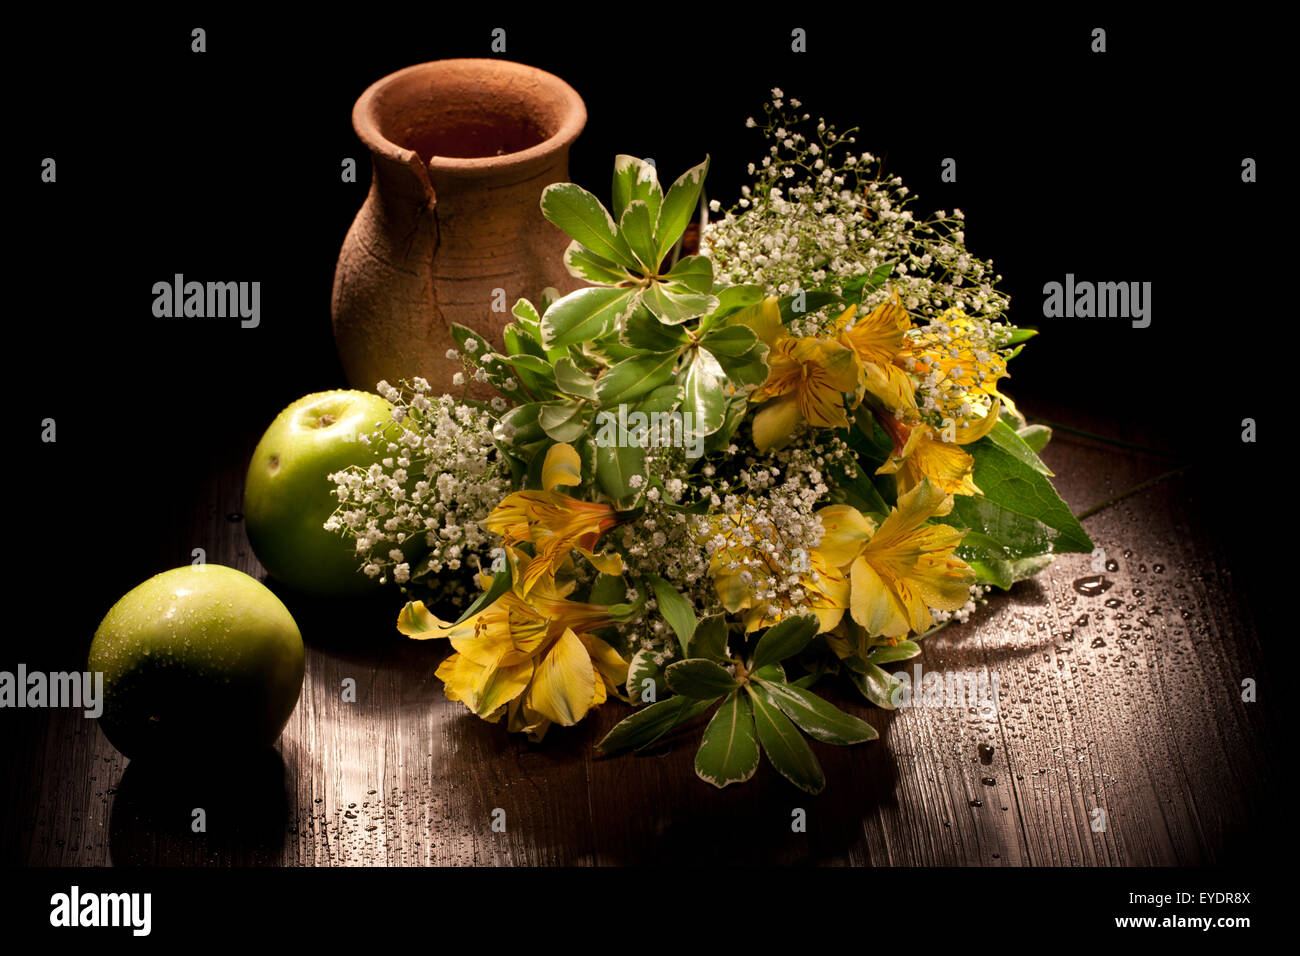 Pot en céramique pot still life style pays apple bouquet de fleurs tableau rural de bois produit alimentaire culture Banque D'Images